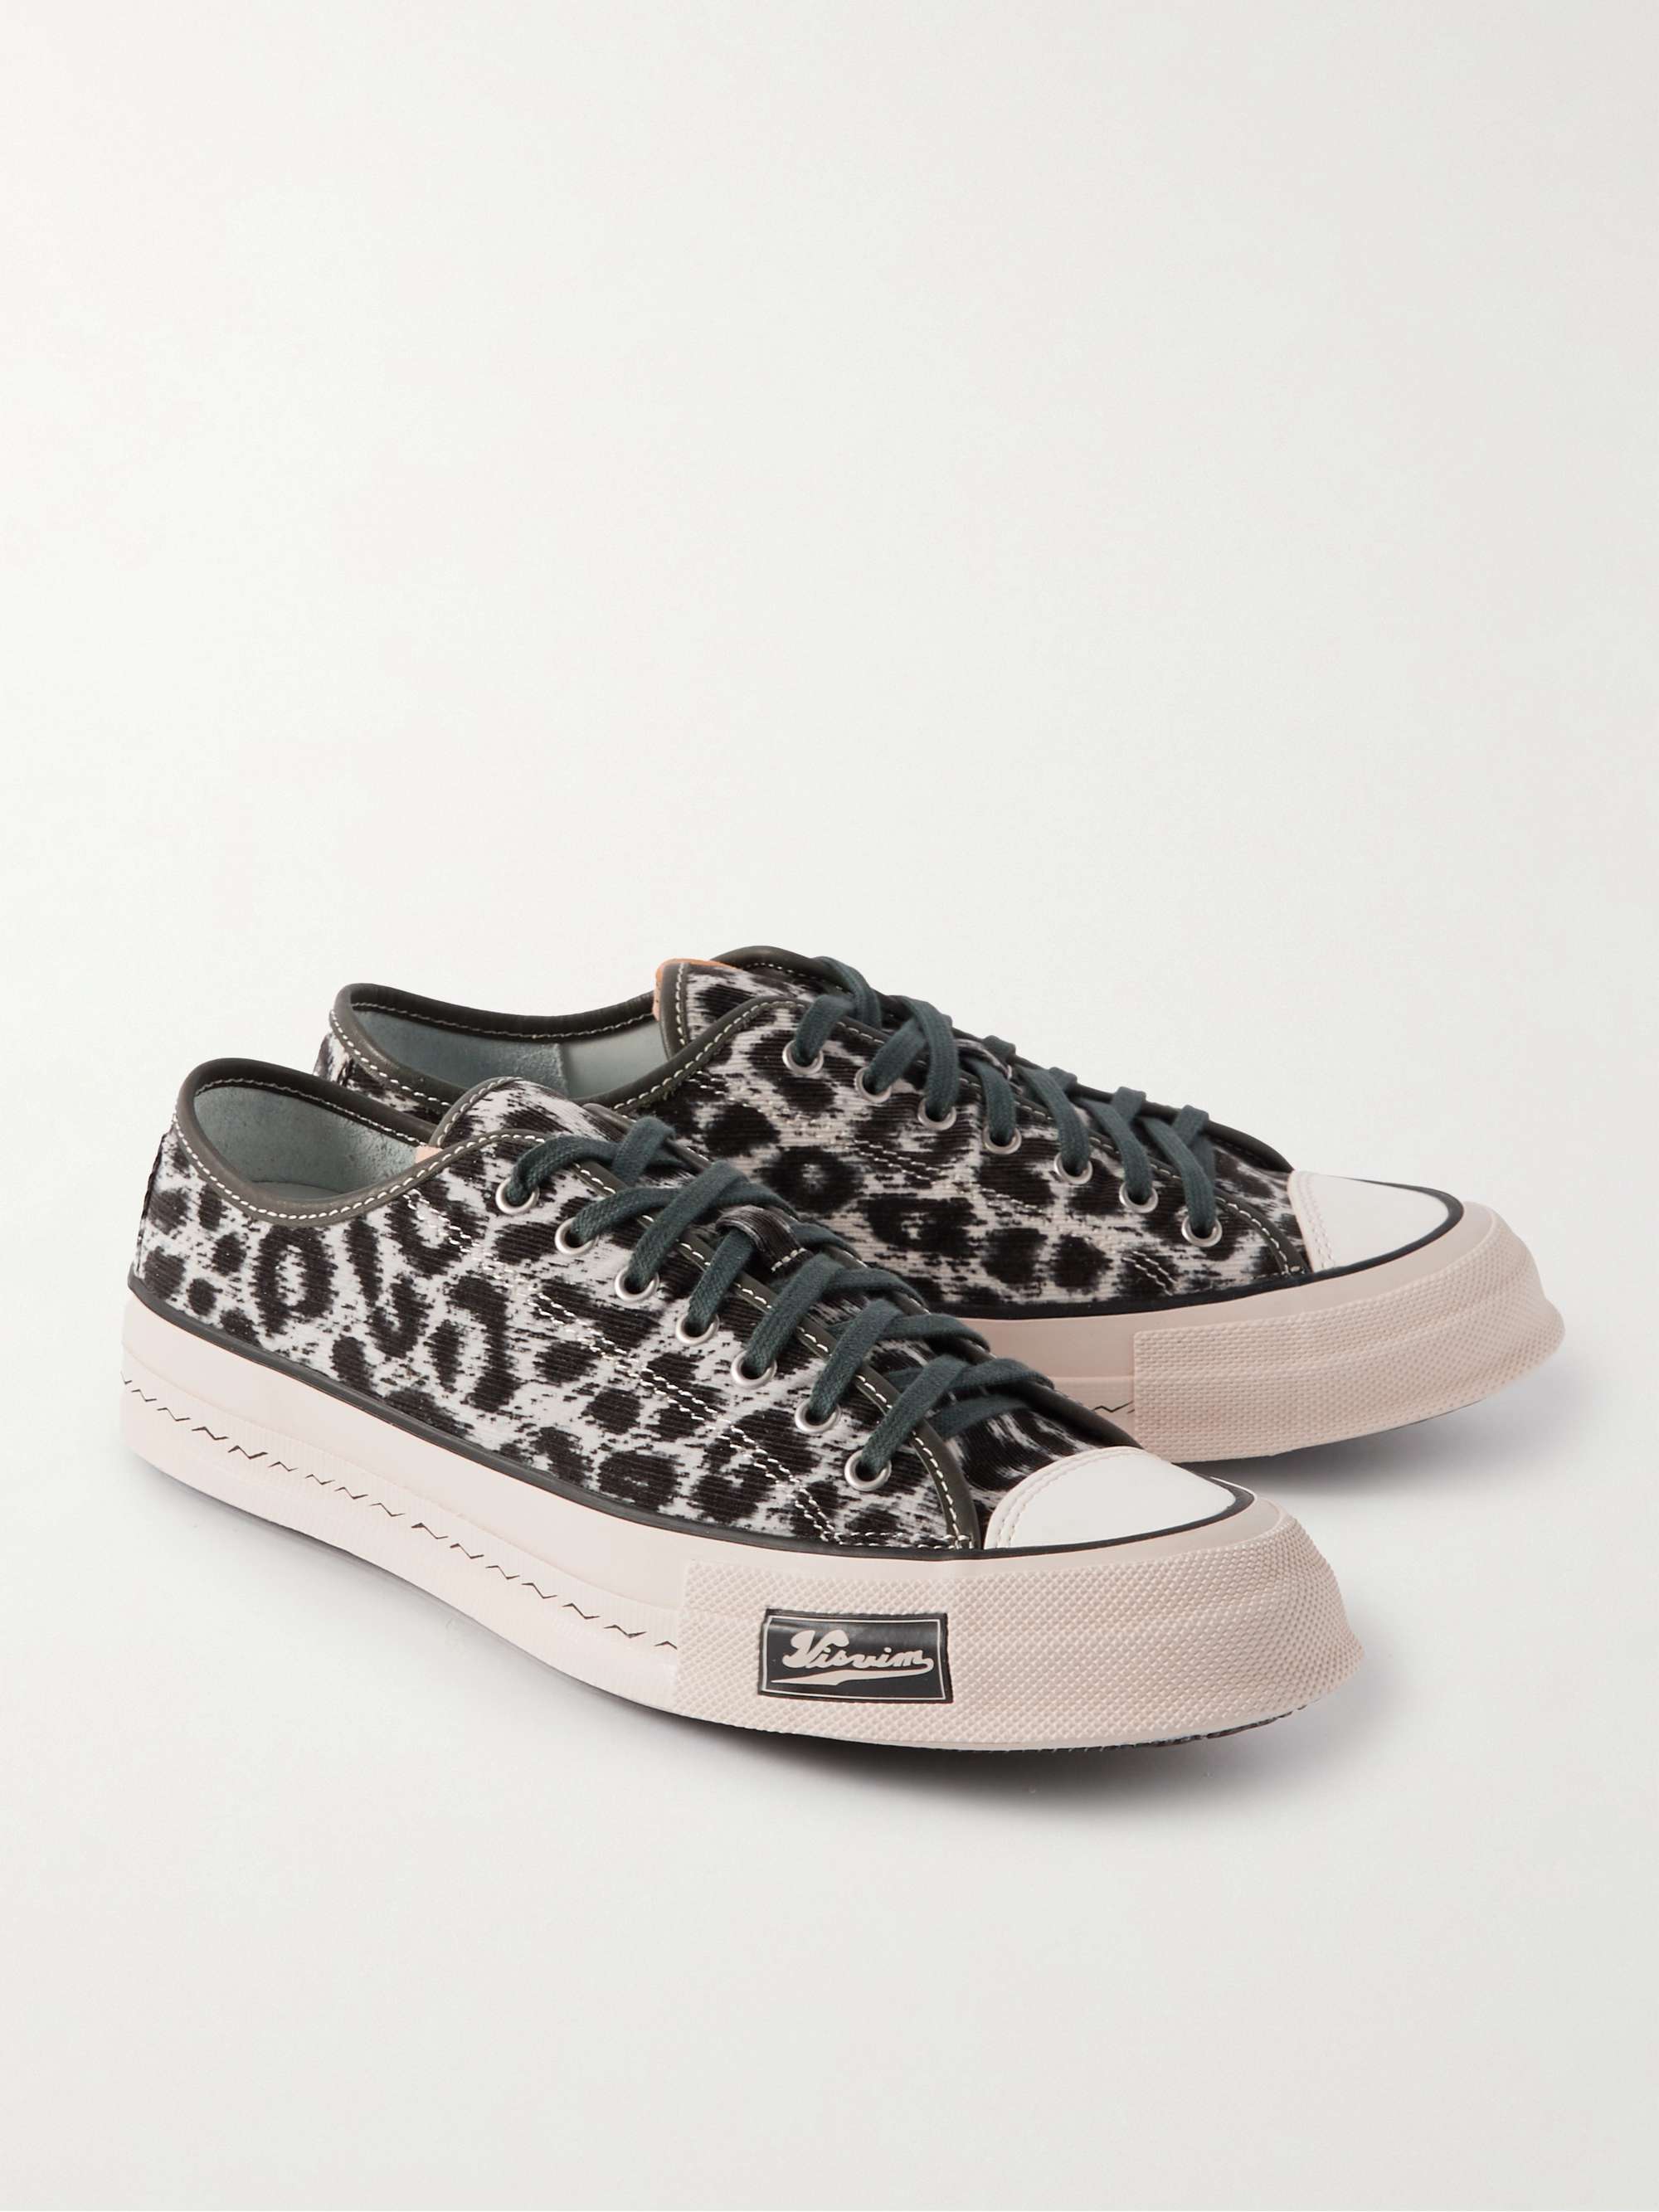 VISVIM Skagway Leather-Trimmed Leopard-Print Corduroy Sneakers